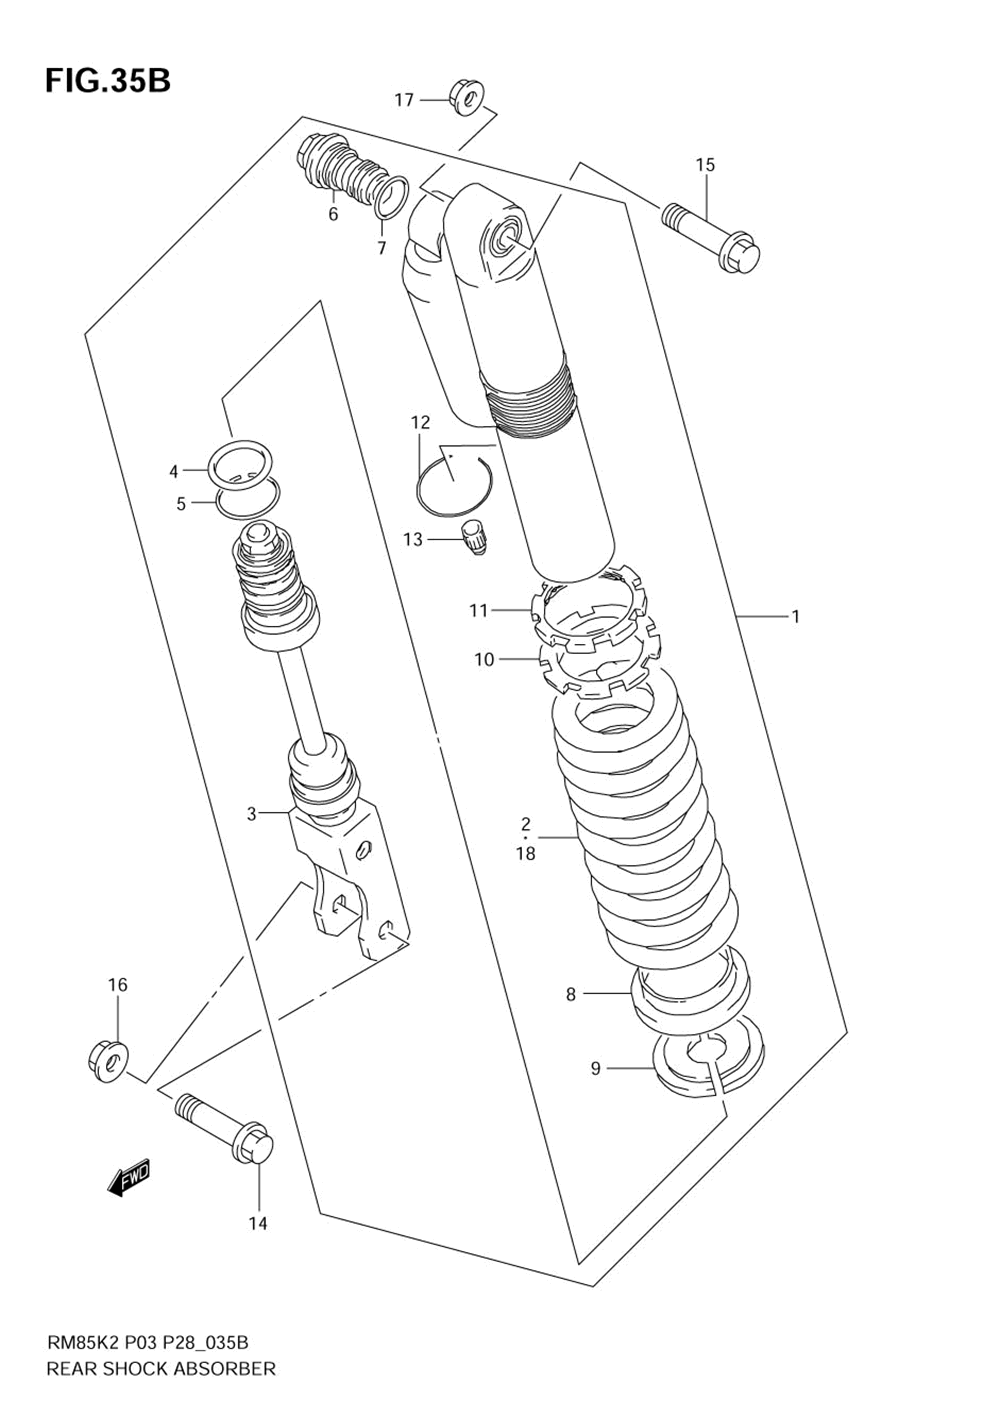 Rear shock absorber (model k5_k6)